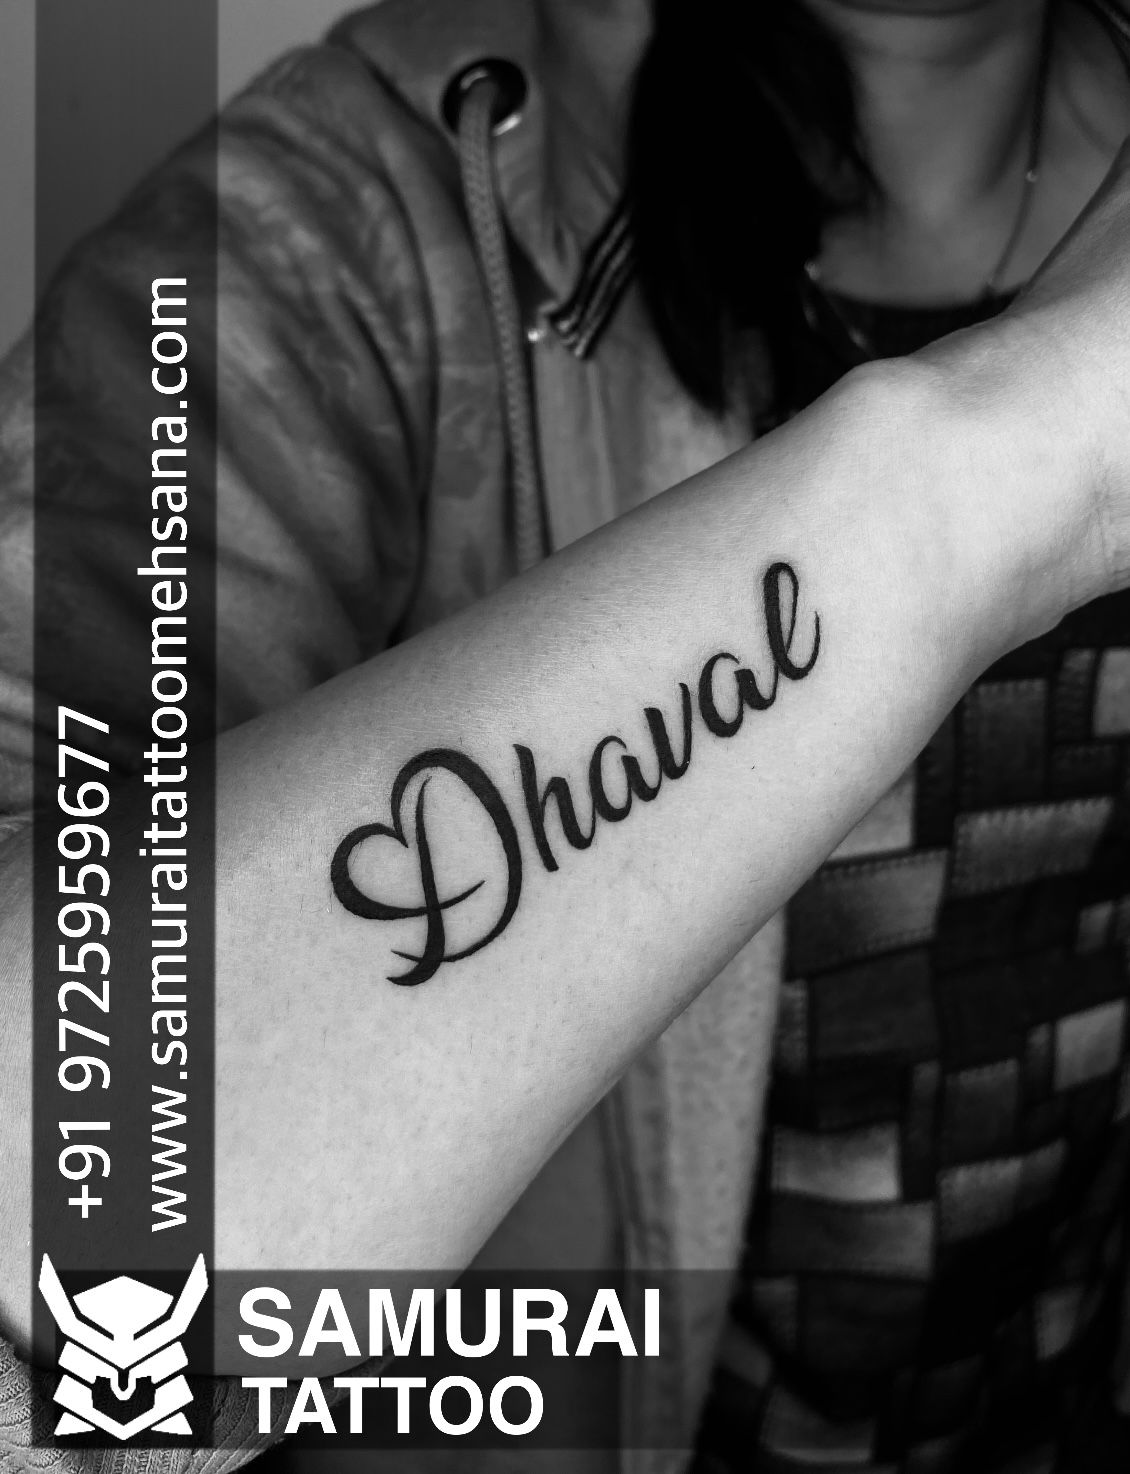 Dhaval Name Tattoo | Name tattoo, Girl tattoos, Tattoos